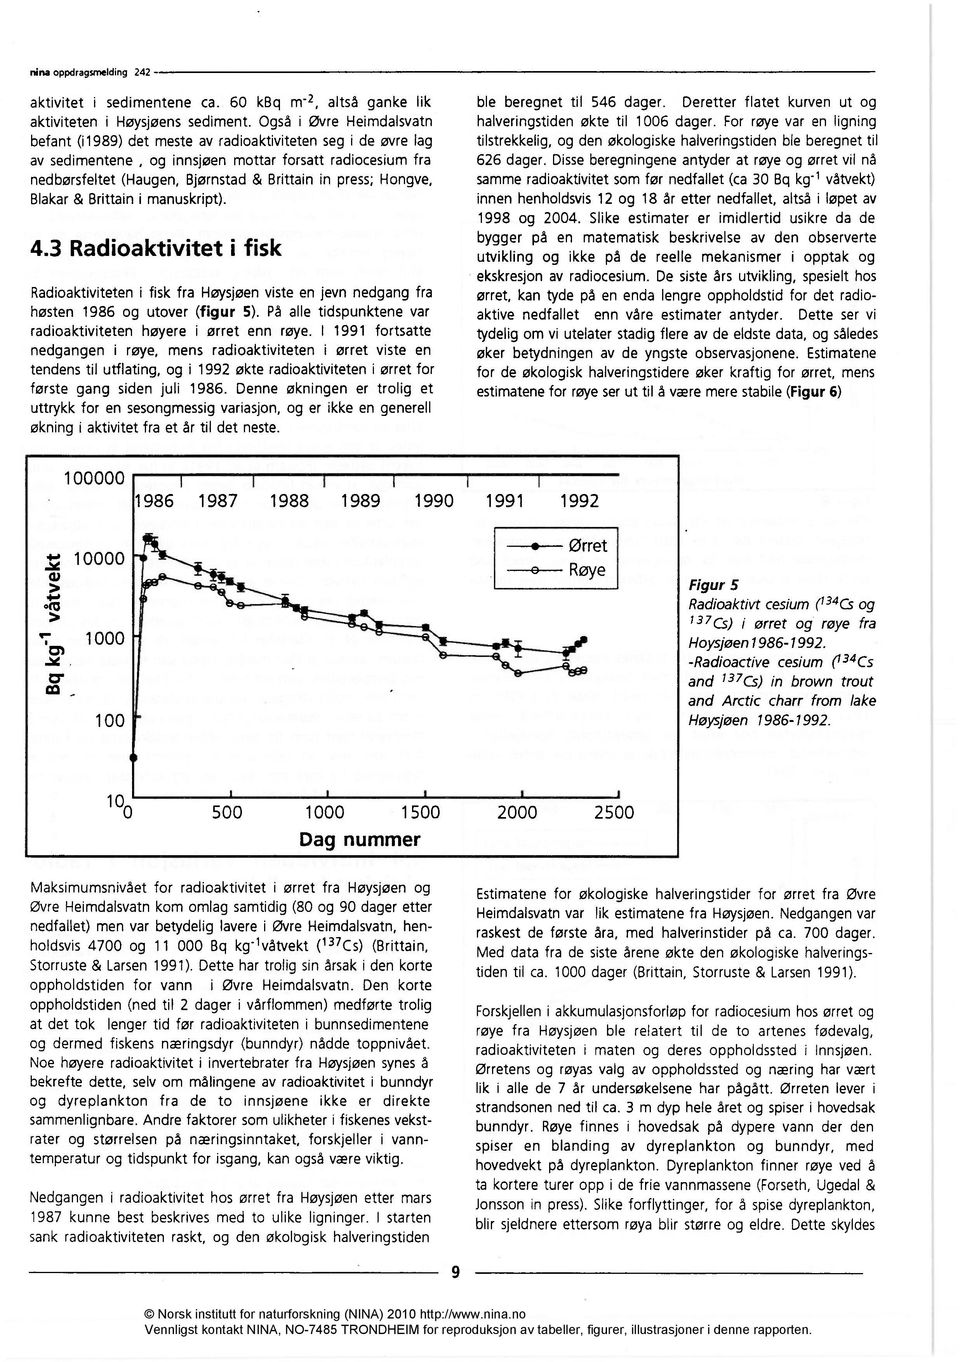 press; Hongve, Blakar & Brittain i manuskript). 4.3 Radioaktivitet i fisk Radioaktiviteten i fisk fra Høysjøen viste en jevn nedgang fra høsten 1986 og utover (figur 5).